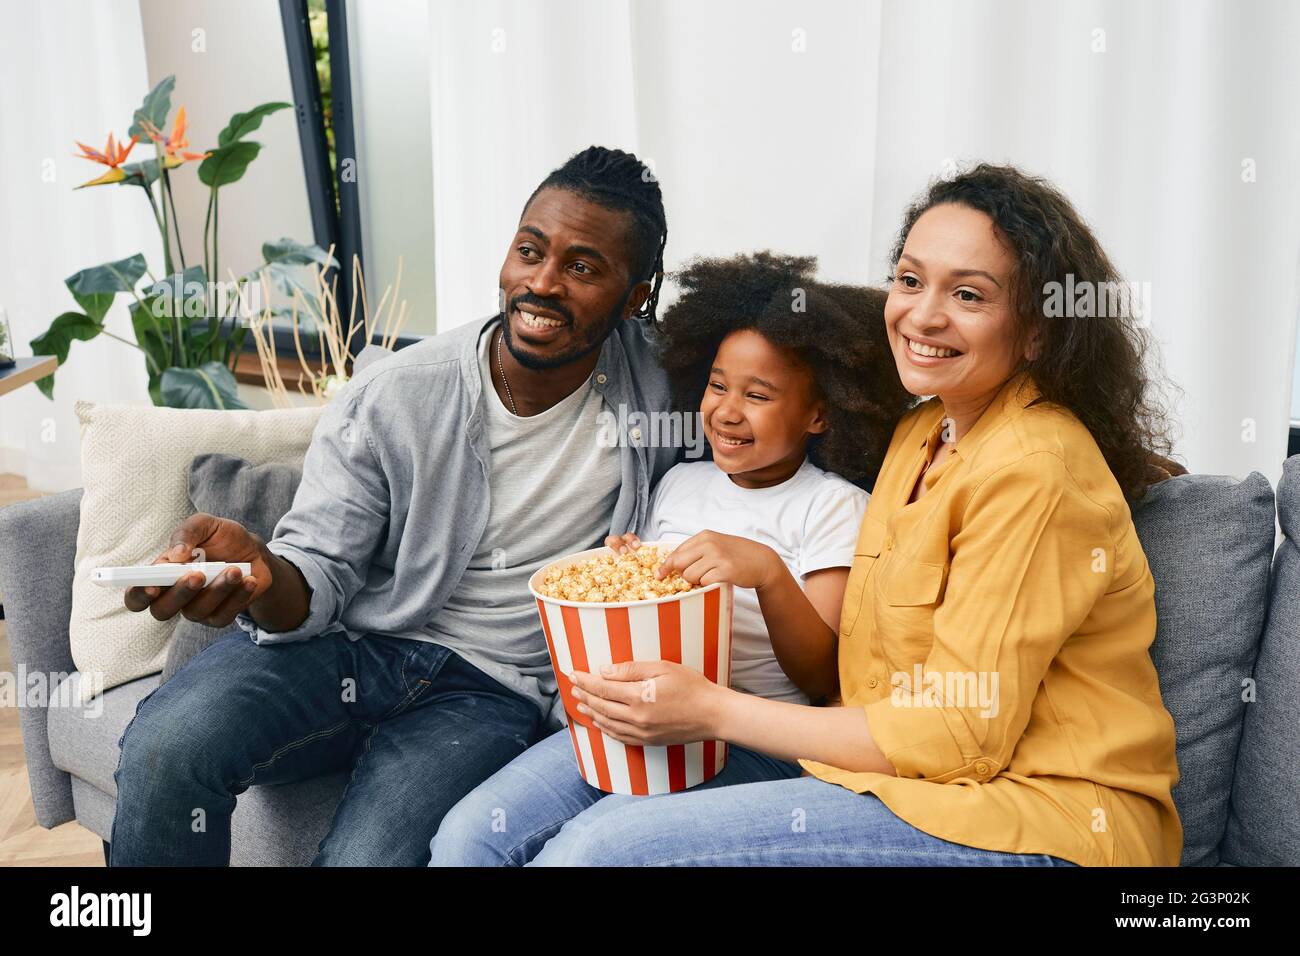 Une famille amusante avec une petite fille regarde un film de comédie ensemble et mange du pop-corn dans un grand seau à rayures dans une maison confortable Banque D'Images